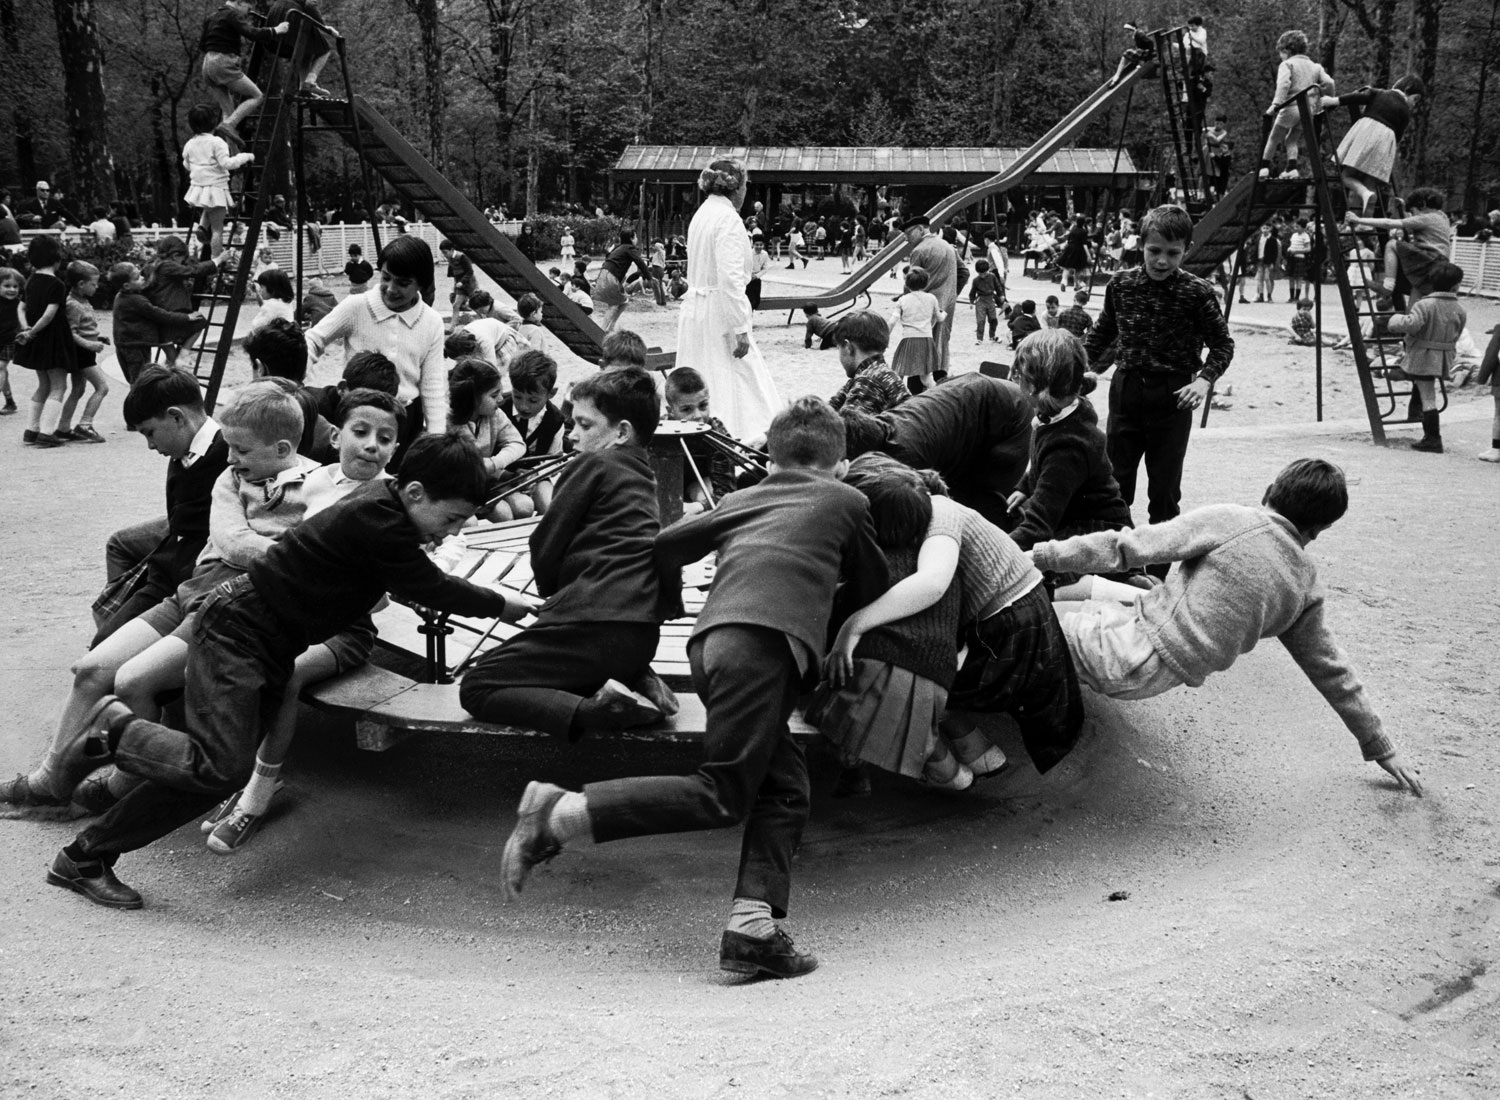 Parisian children riding merry-go-round in a playground, 1963.